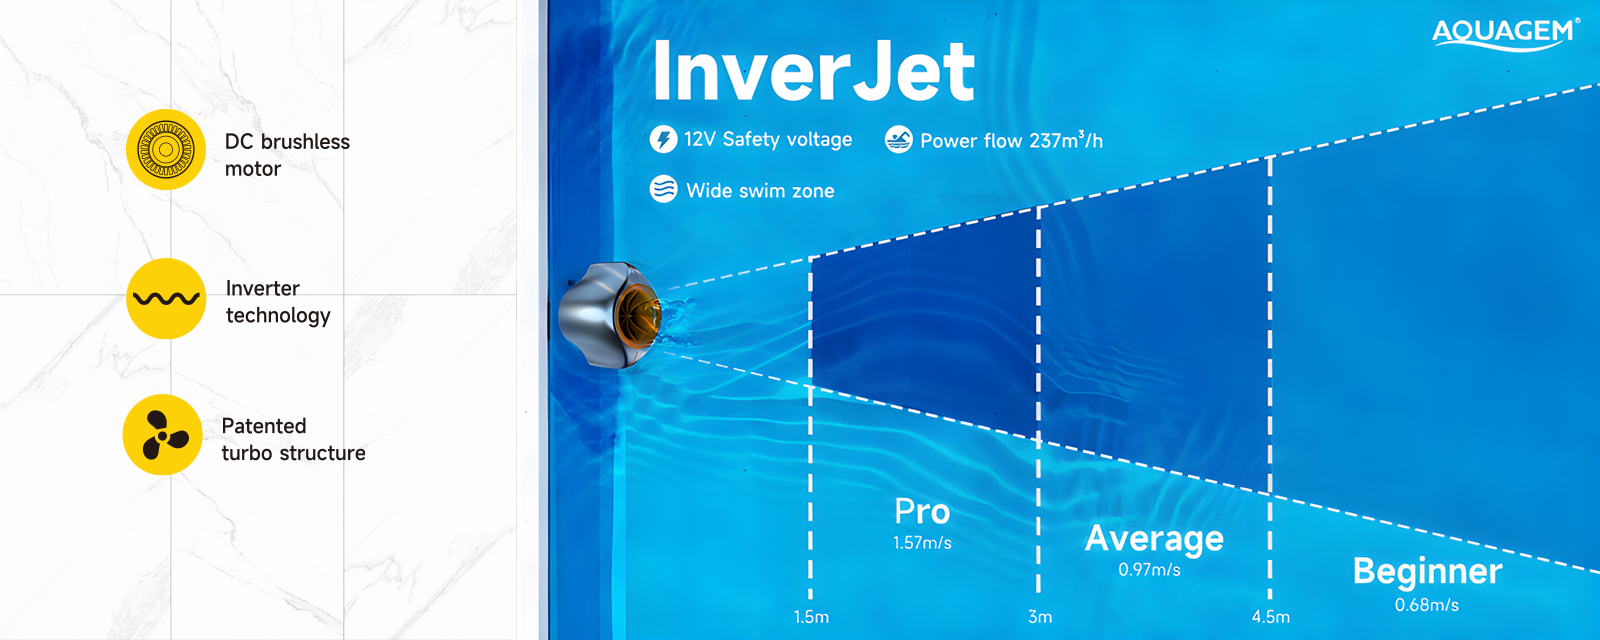 Maszyna do pływania Inverjet do basenu — Potężny przepływ: Maks. 237m³/h